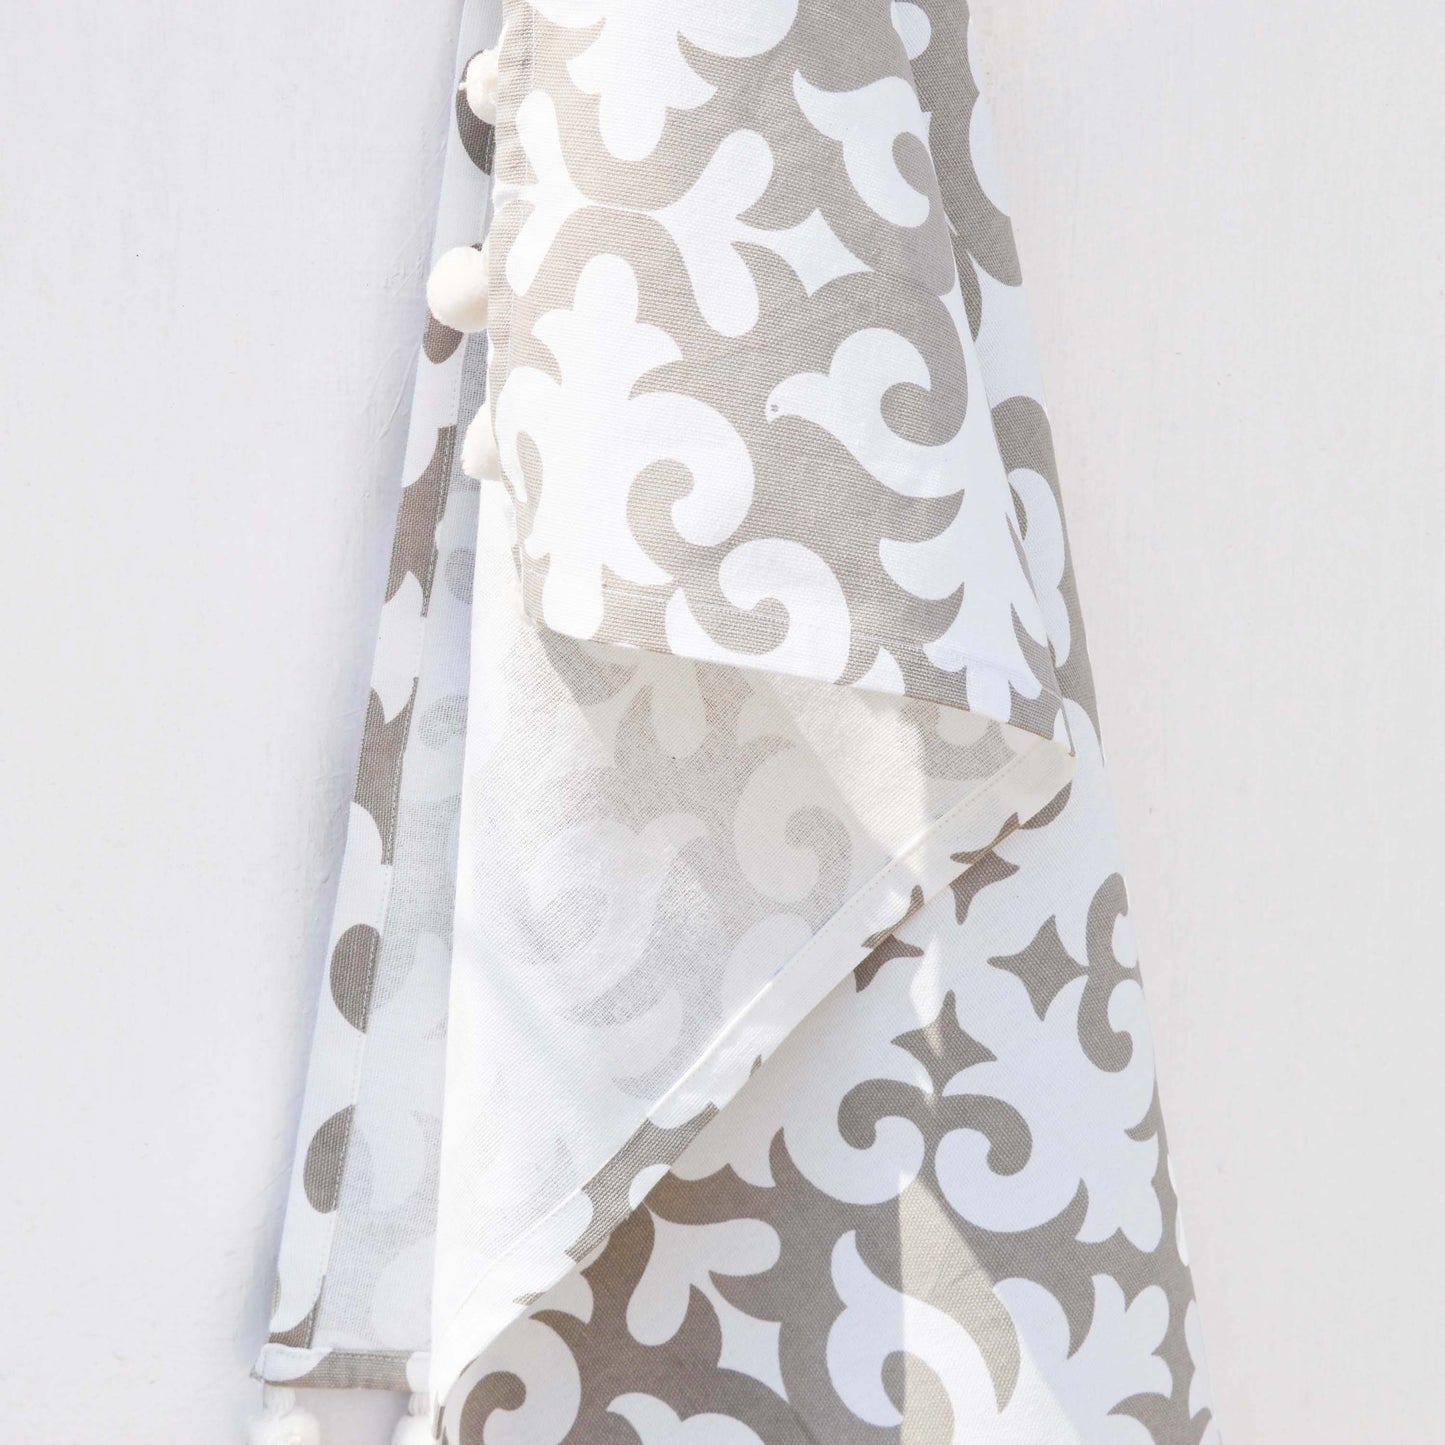 SHYRDAK Kitchen towel, Grey print on white, moroccan print, 100% cotton, size 20"X28"